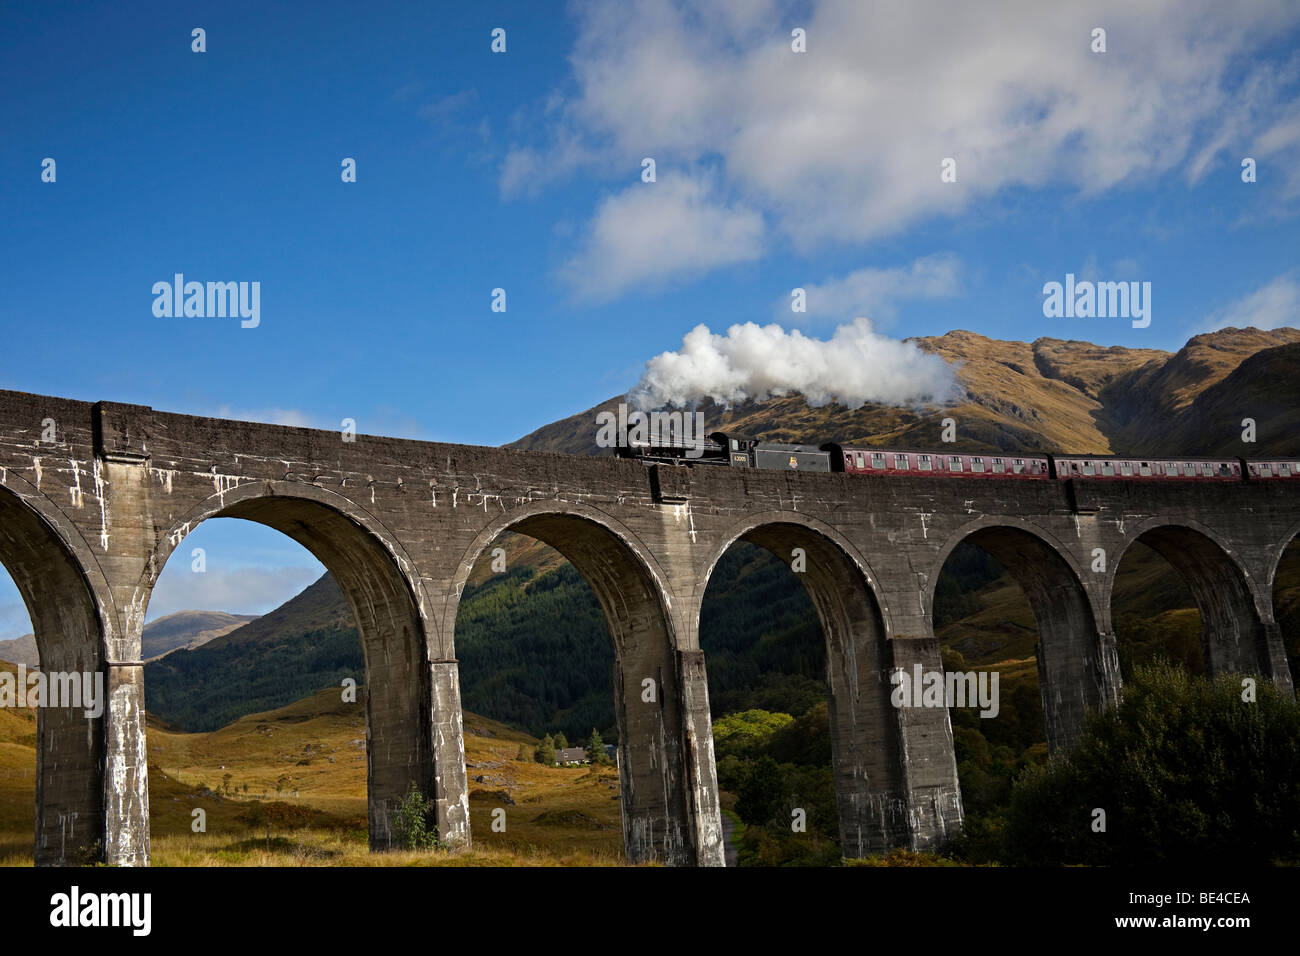 Passage du Train à vapeur Jacobite viaduc de Glenfinnan, West Highland Line, Lochaber, Écosse, Royaume-Uni, Europe Banque D'Images